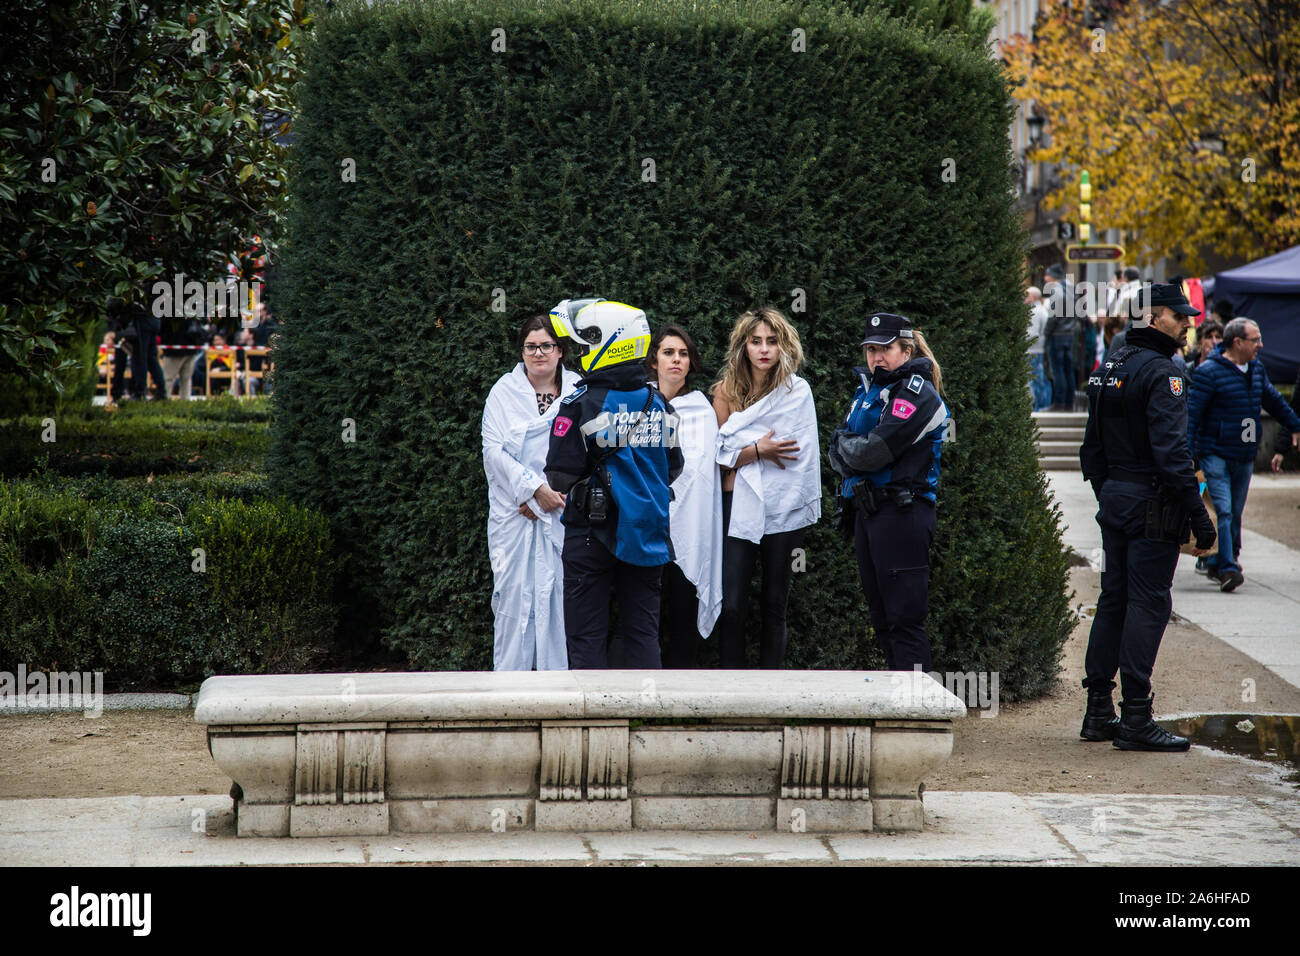 Tre attivisti FEMEN dopo essere stati detenuti e coprire con coperte durante il rally. Ogni novembre 20th, centinaia di regime di Franco sostenitori marzo in un rally per celebrare e onorare il dittatore della morte (novembre 20th, 1975). Durante il rally, tre attivisti FEMEN irrupted impegnativo che dimostrazioni fascista deve essere legalizzato in Spagna. Essi sono stati attaccati dai dimostranti e un uomo è stato arrestato. Foto Stock